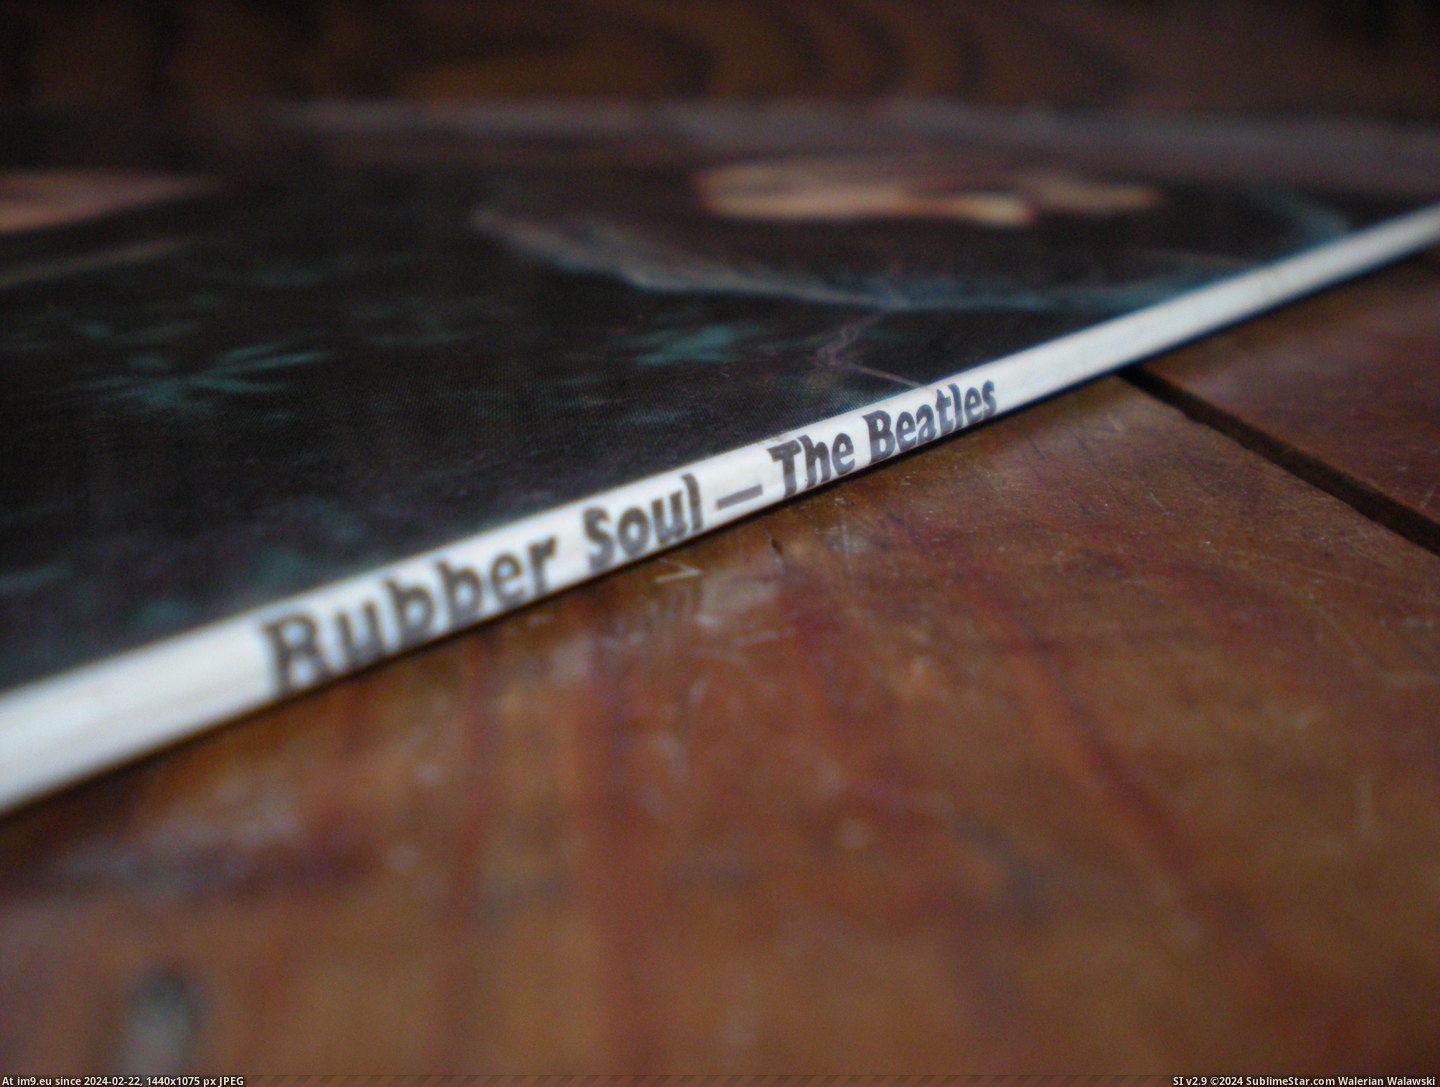  #Rubber  Rubber -4-4 9.1 Pic. (Bild von album new 1))